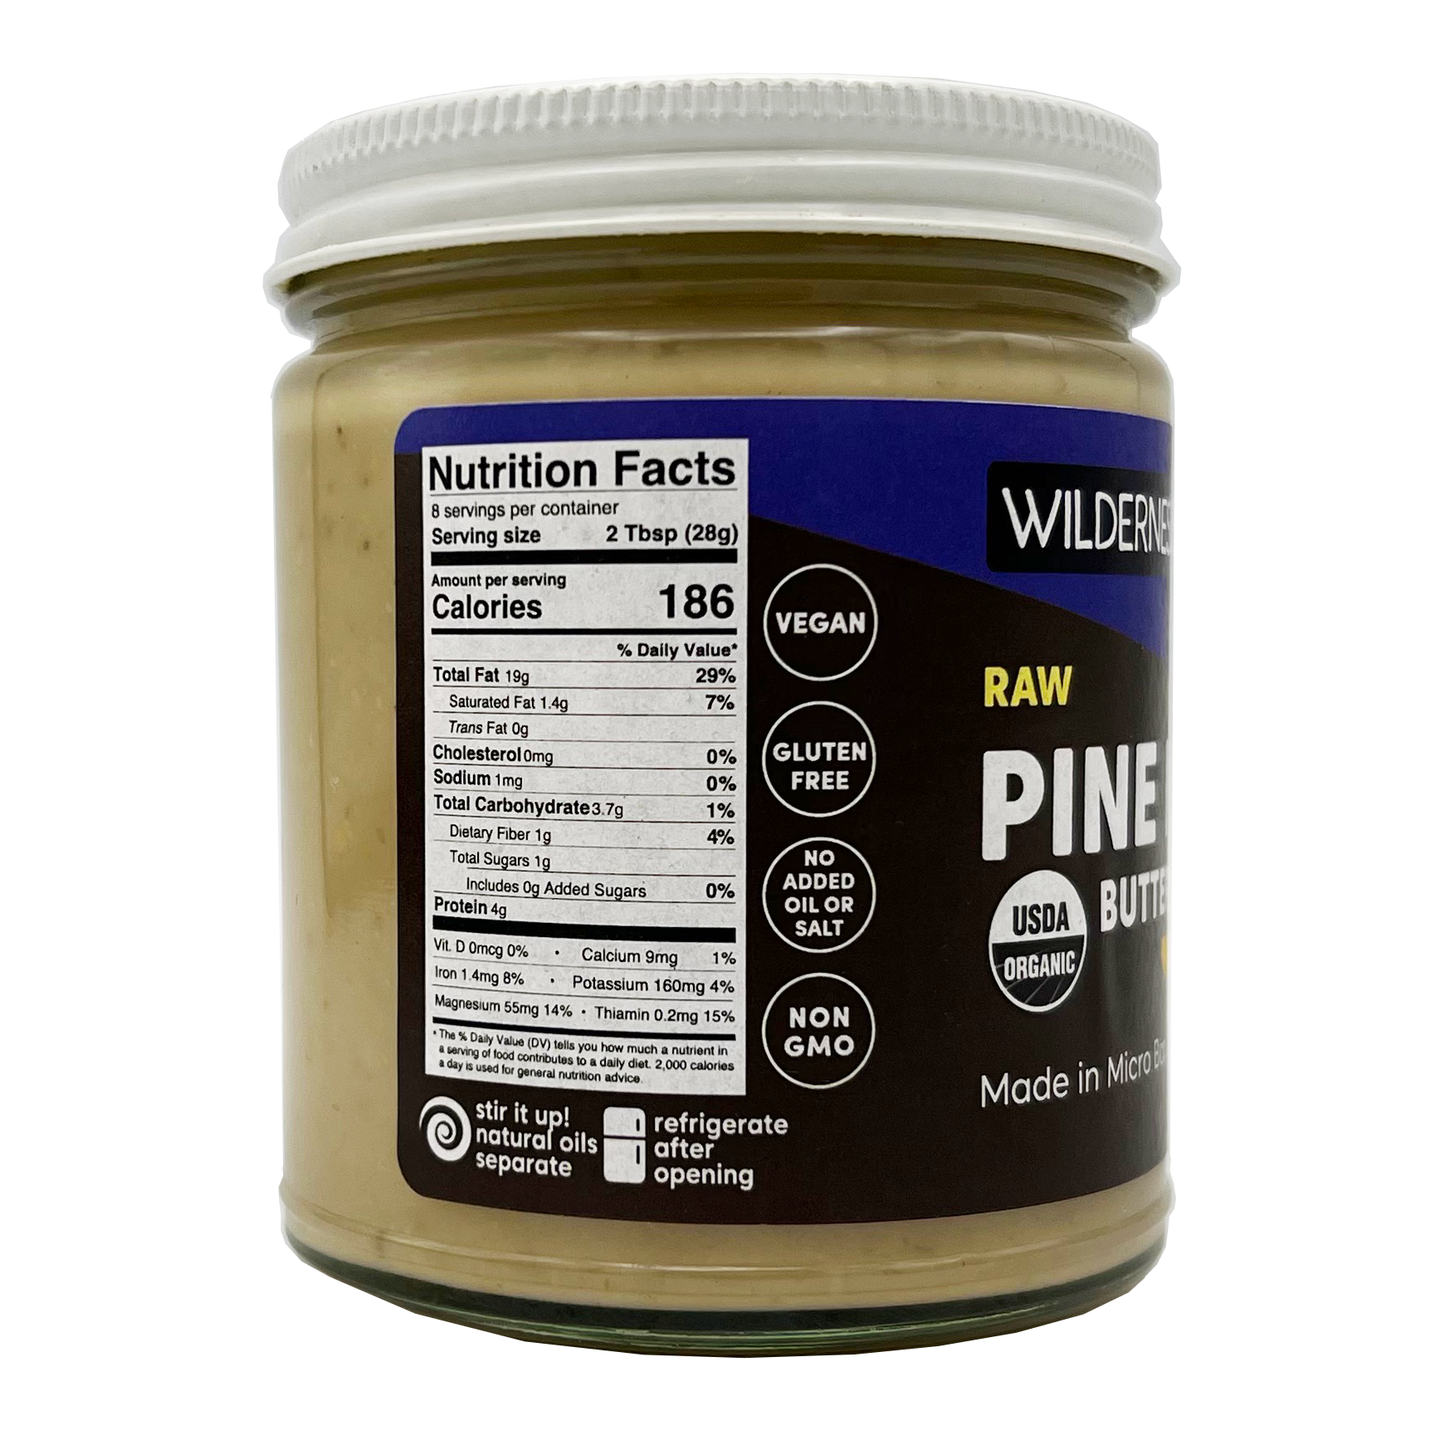 Pine Nut Butter - Organic